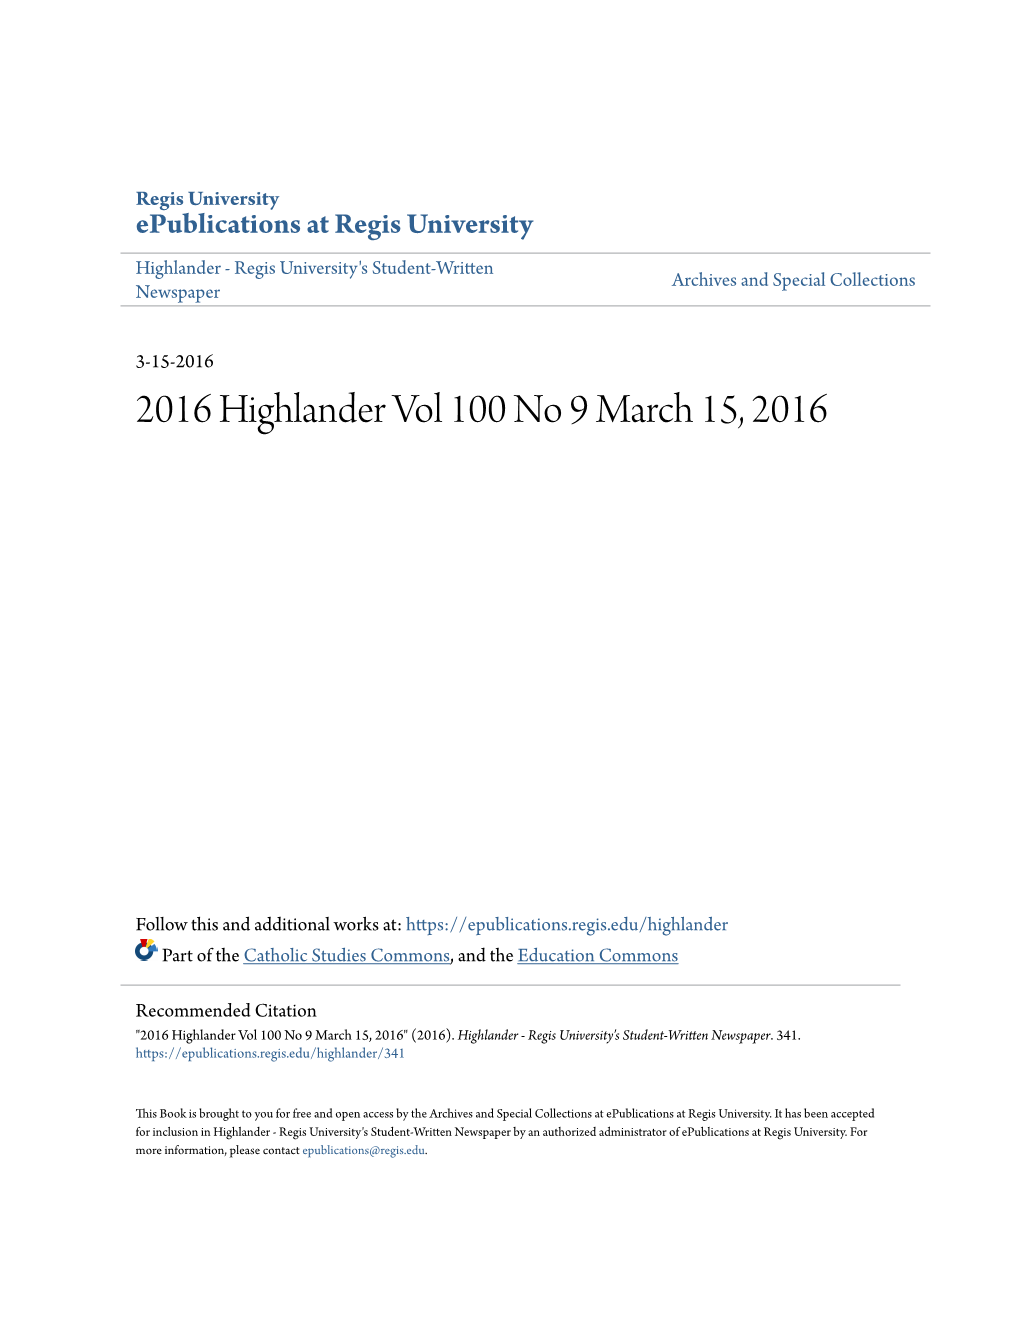 2016 Highlander Vol 100 No 9 March 15, 2016